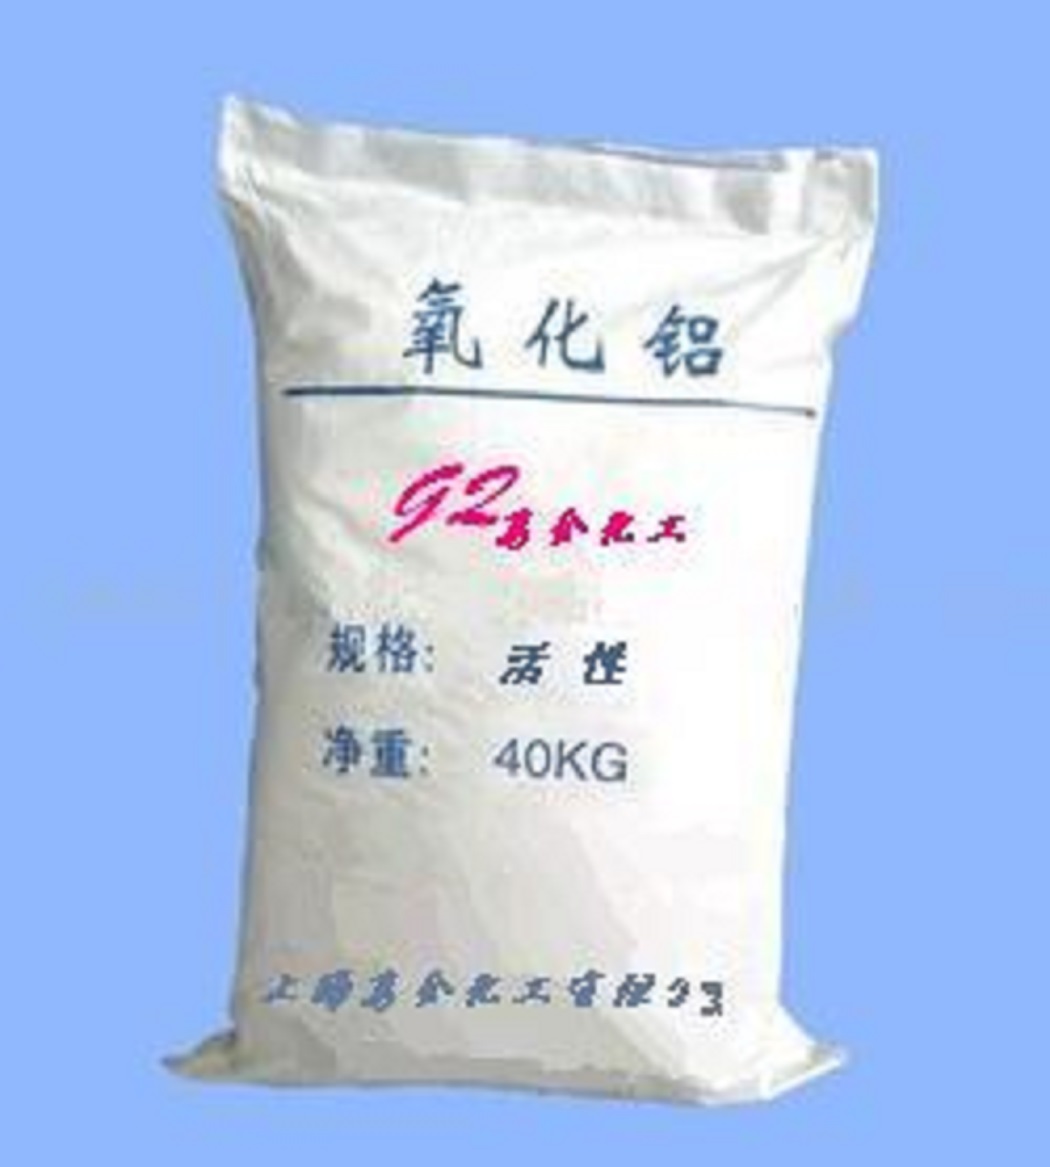  上海廠家直銷雙氧水用活性氧化鋁